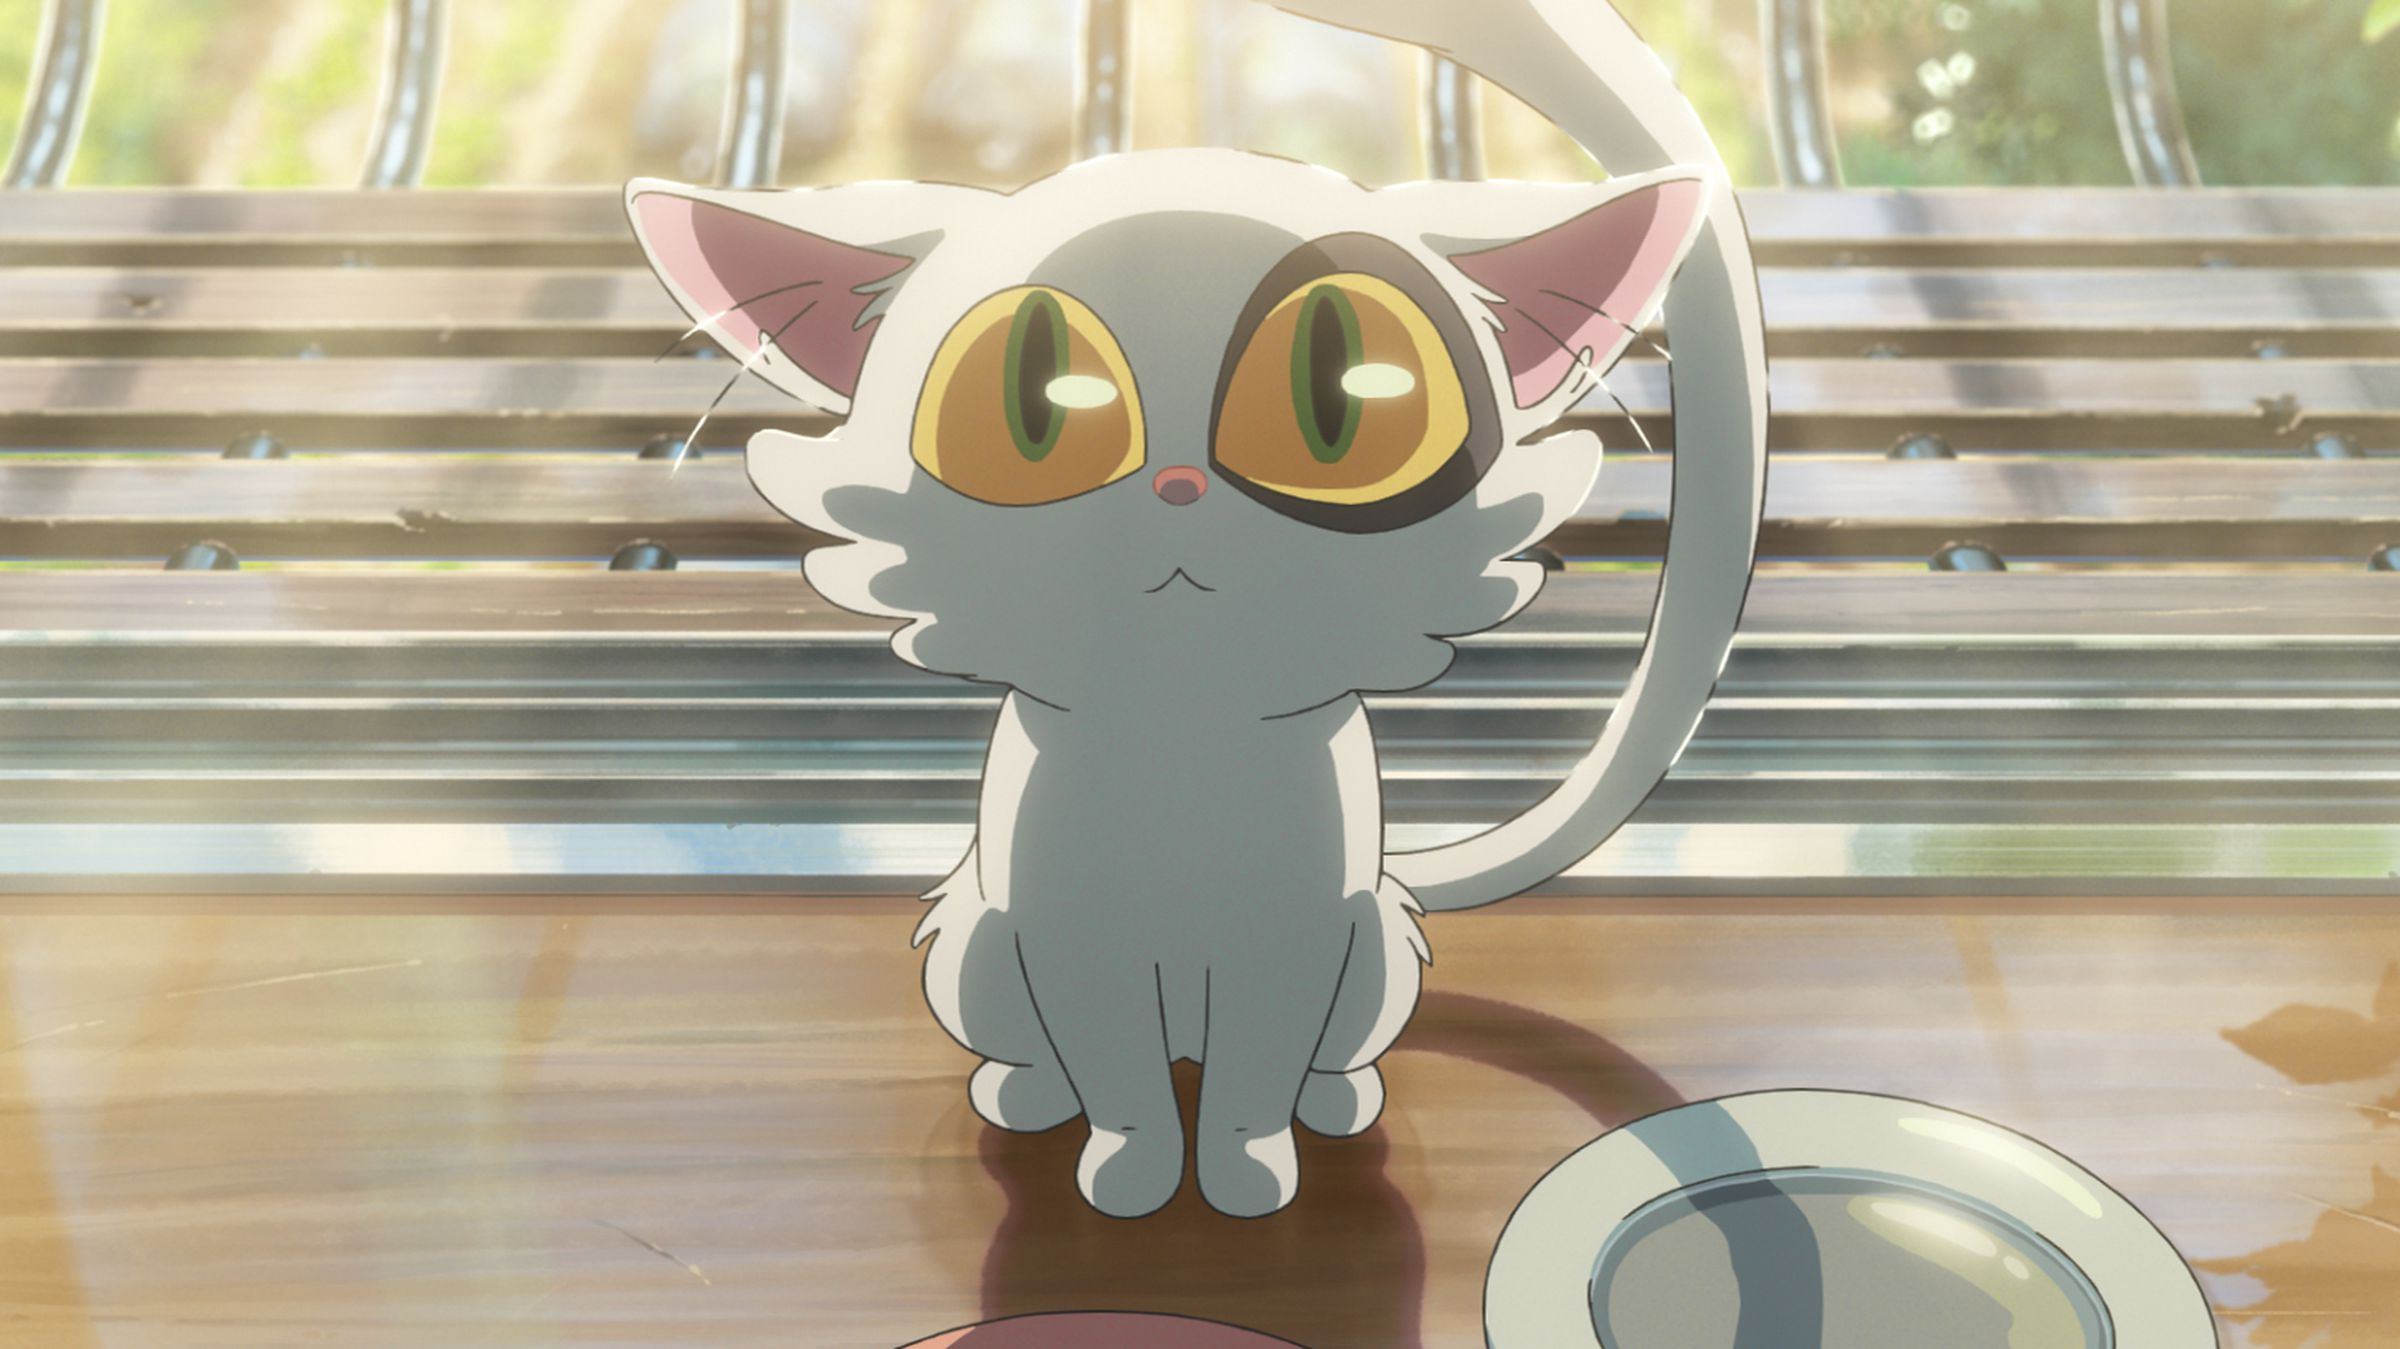 Anime filmi Suzume'den bir kedi görüntüsü.